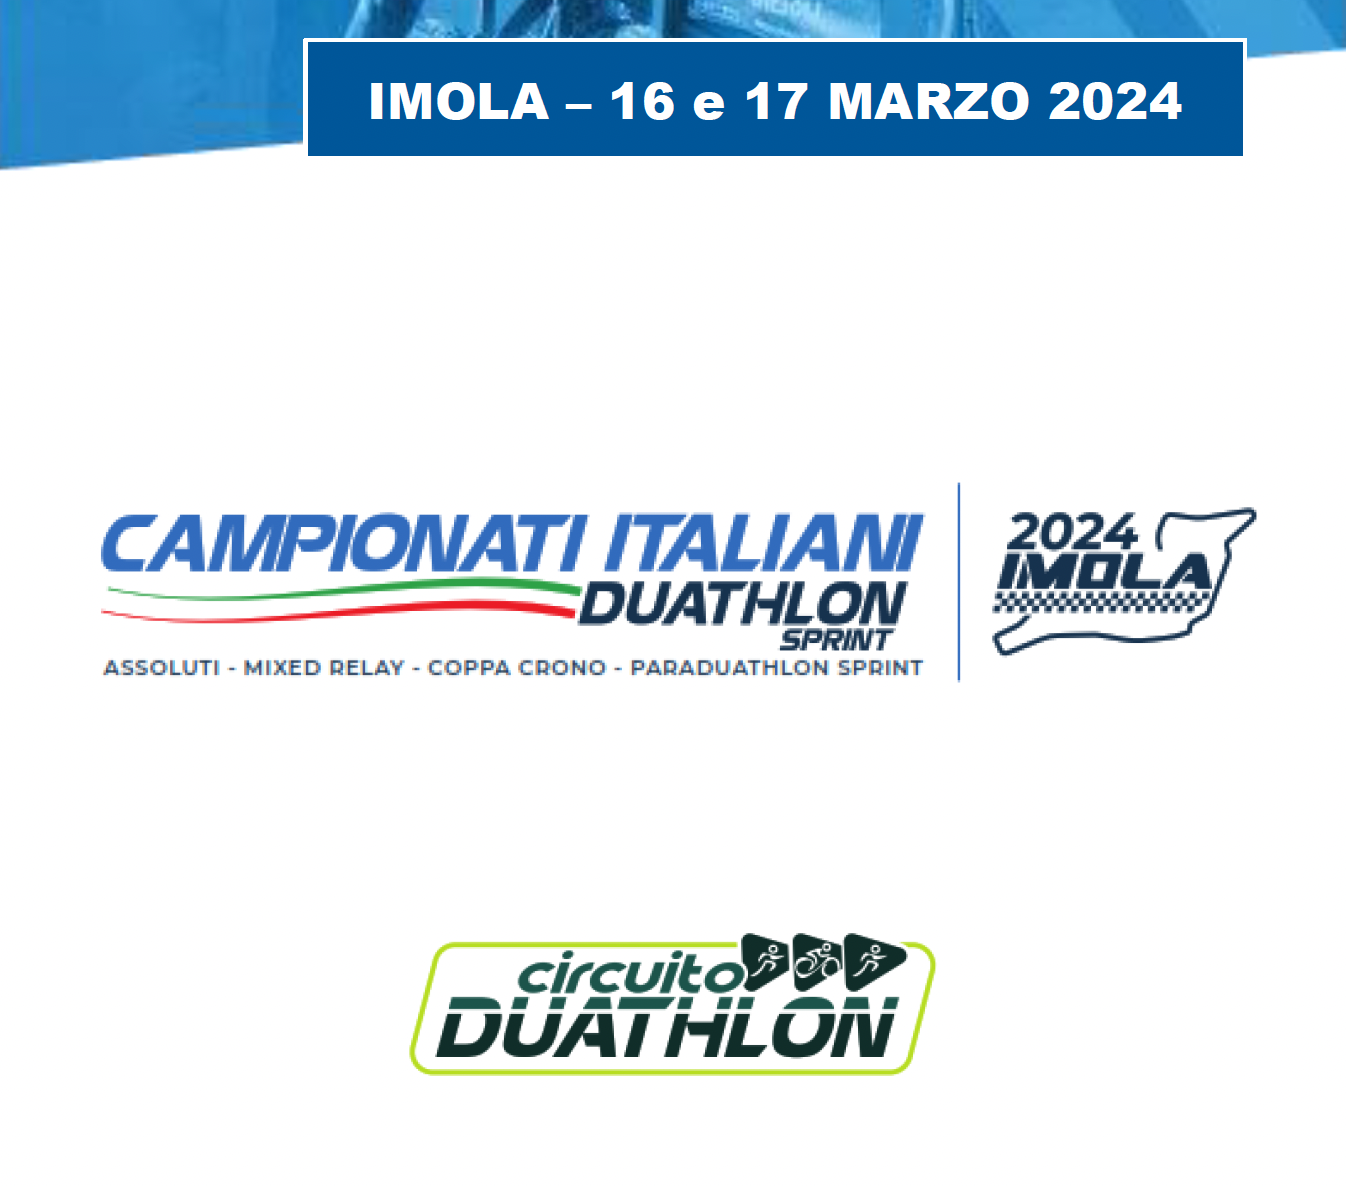 images/2024/Gare_Italia/Campionati_Italiani/Imola/medium/imola_locandina.png